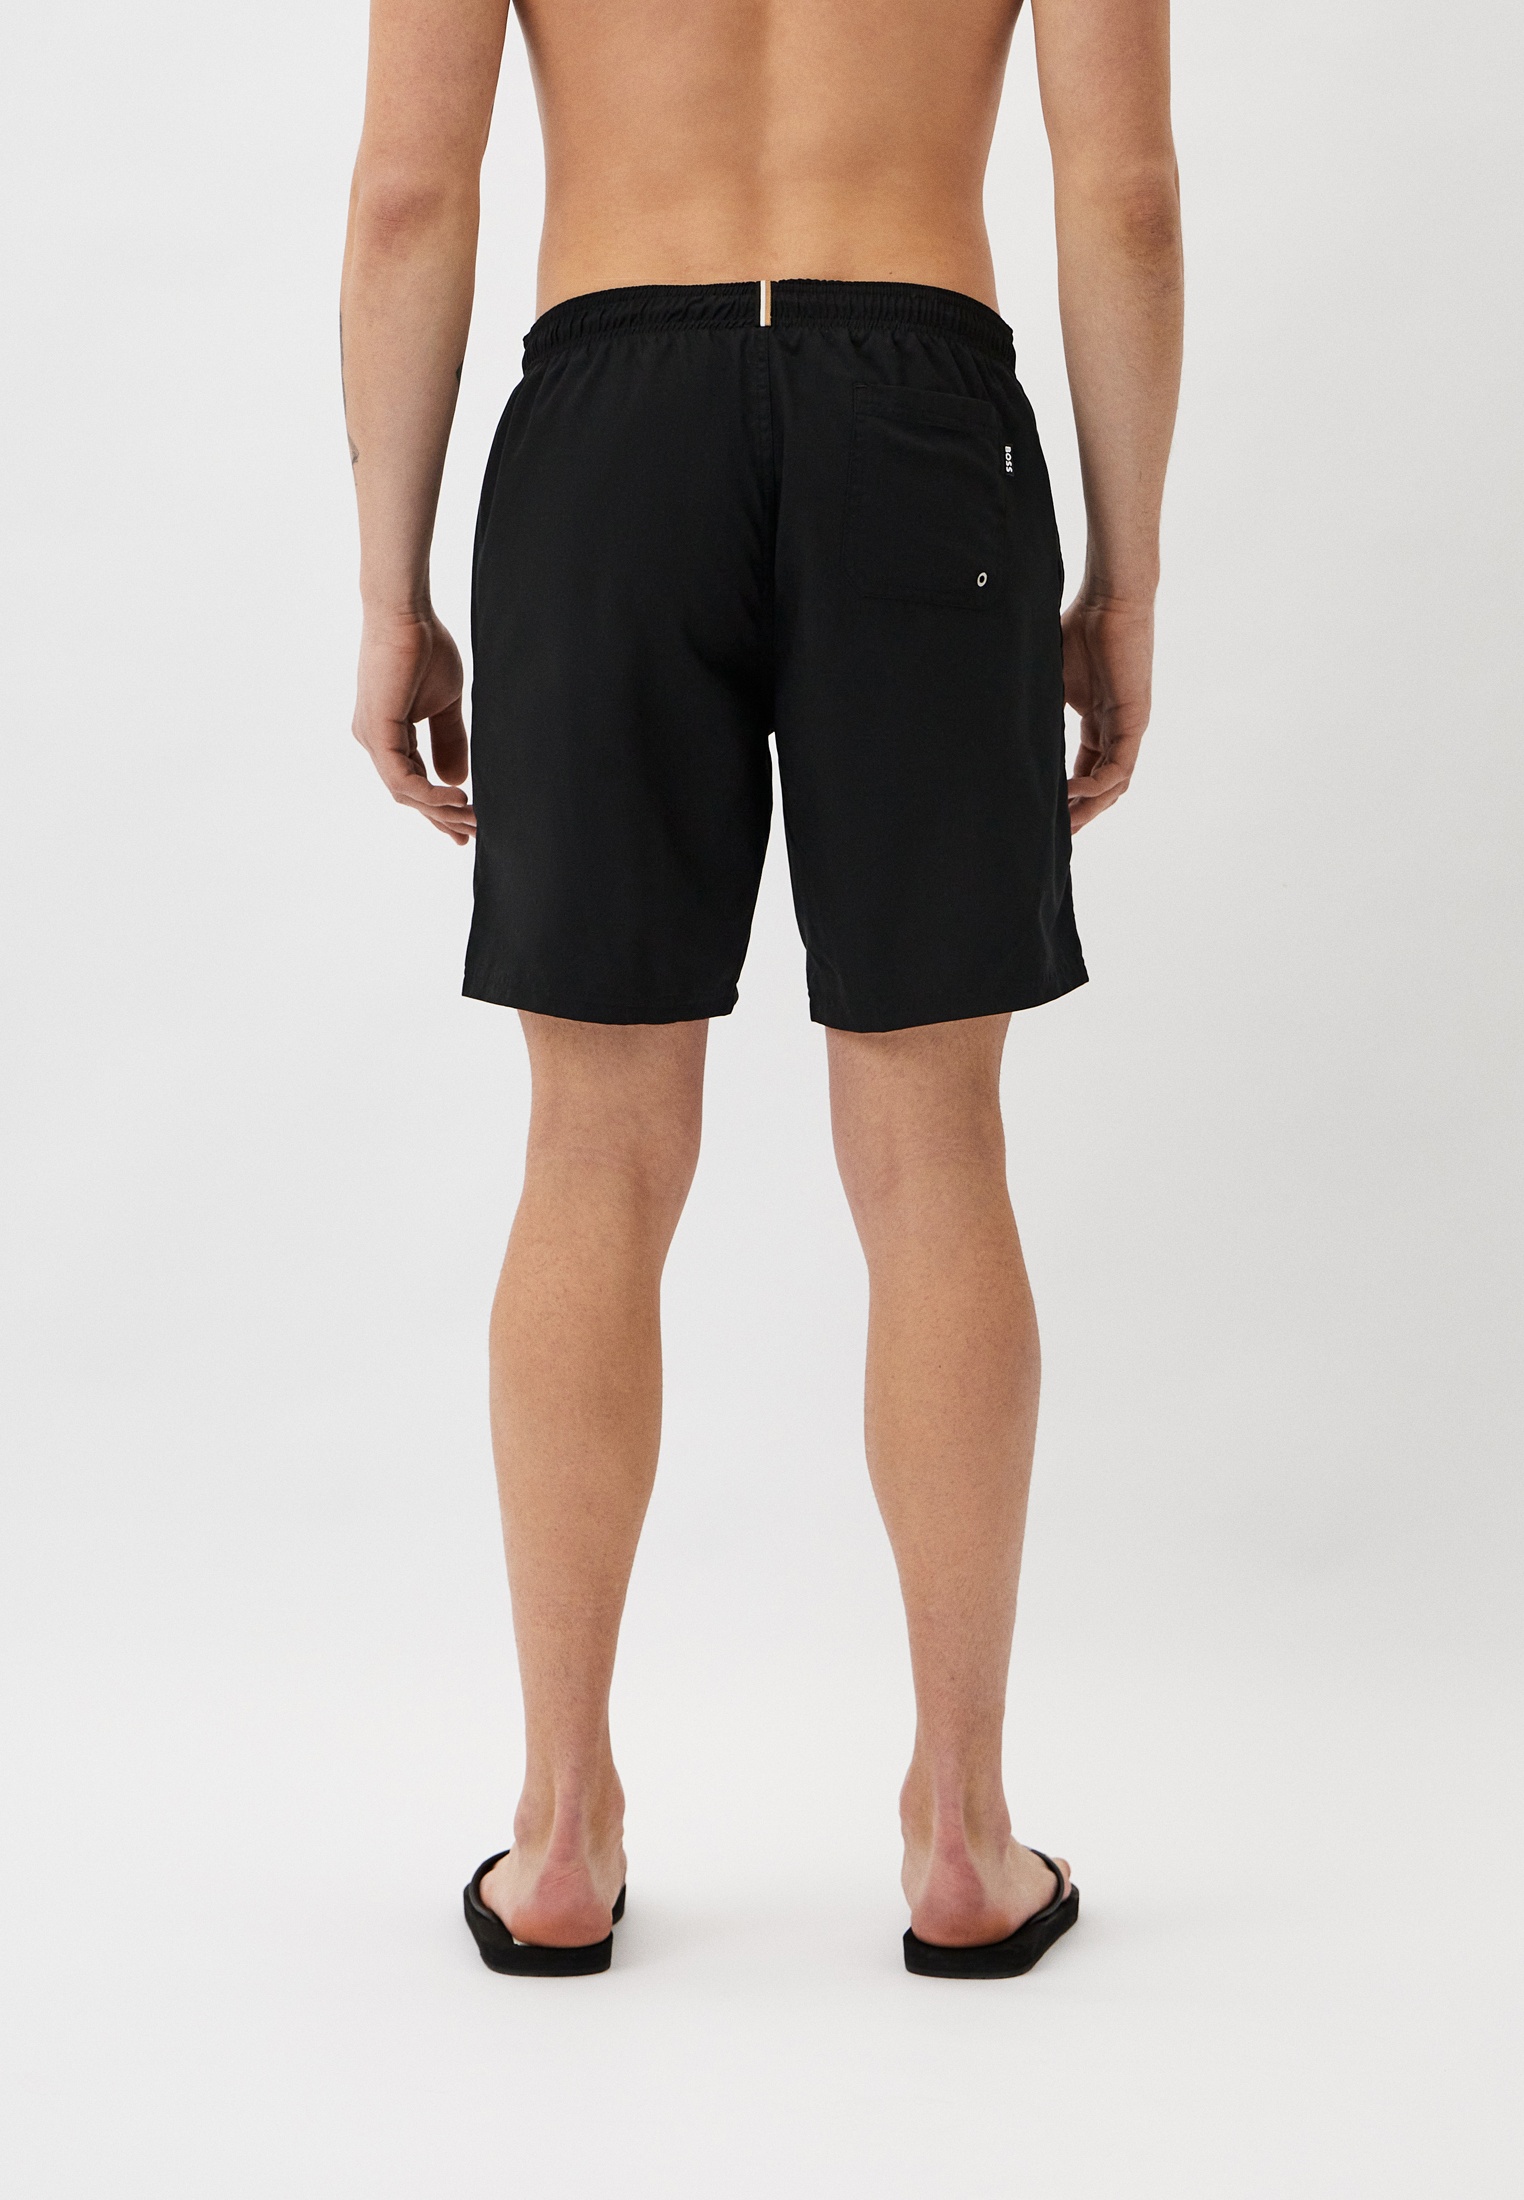 Мужские шорты для плавания Boss (Босс) 50509127: изображение 2